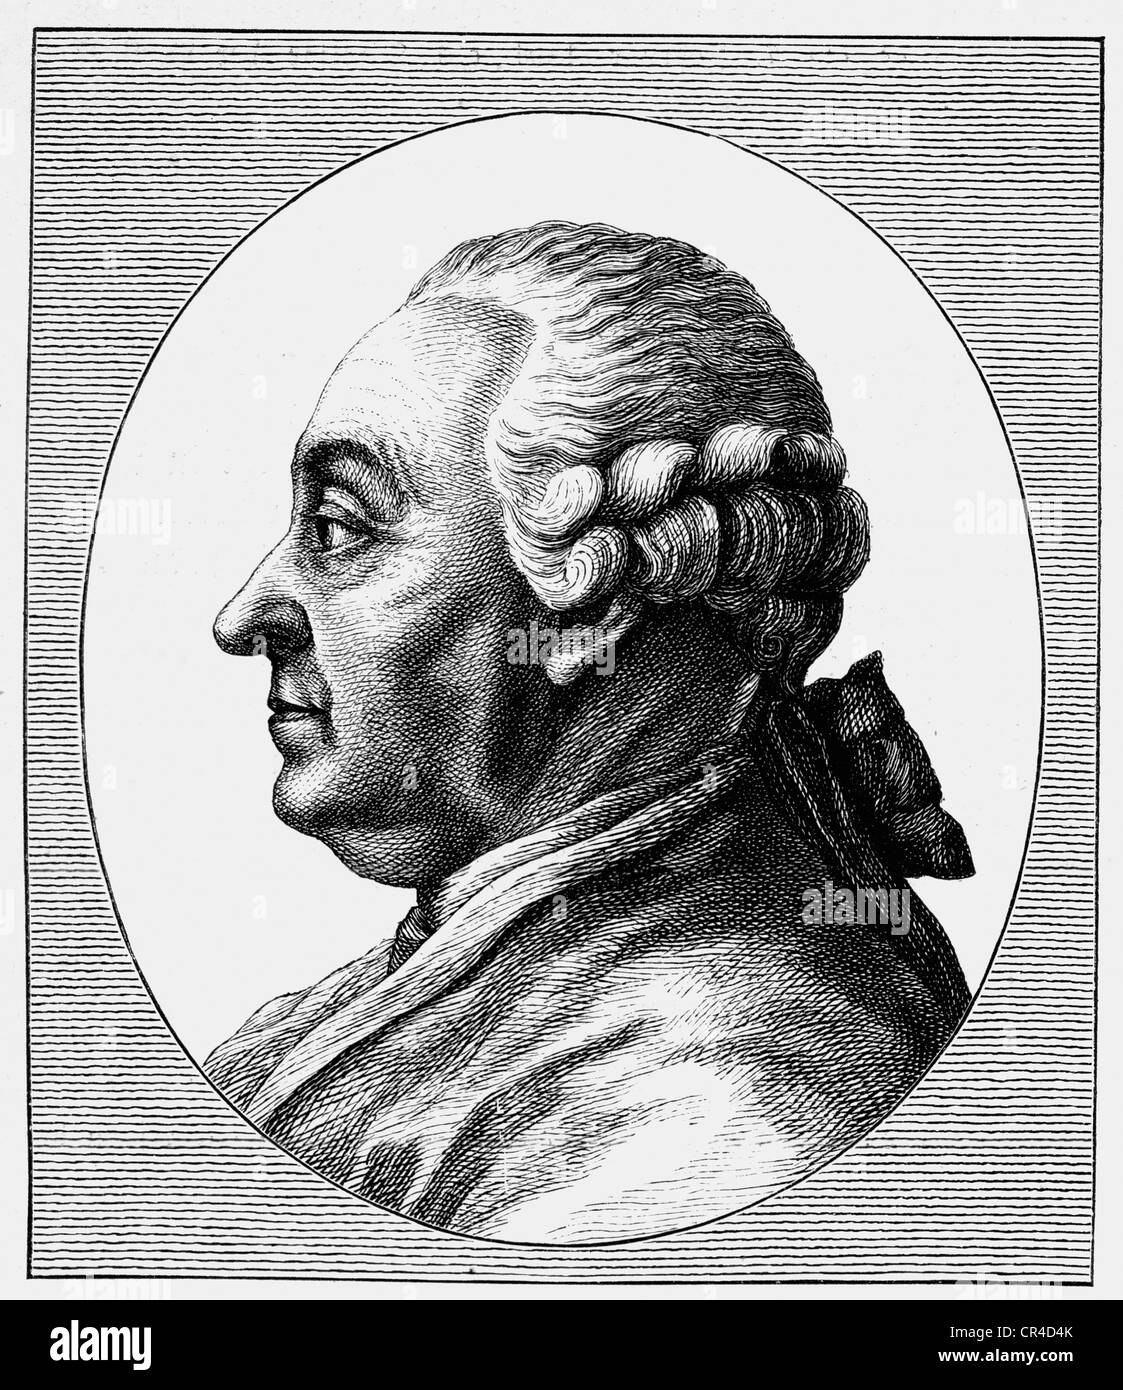 Johann Caspar Goethe (1710-1782), fahter of J.W. von Goethe, steel engraving, before 1880 Stock Photo